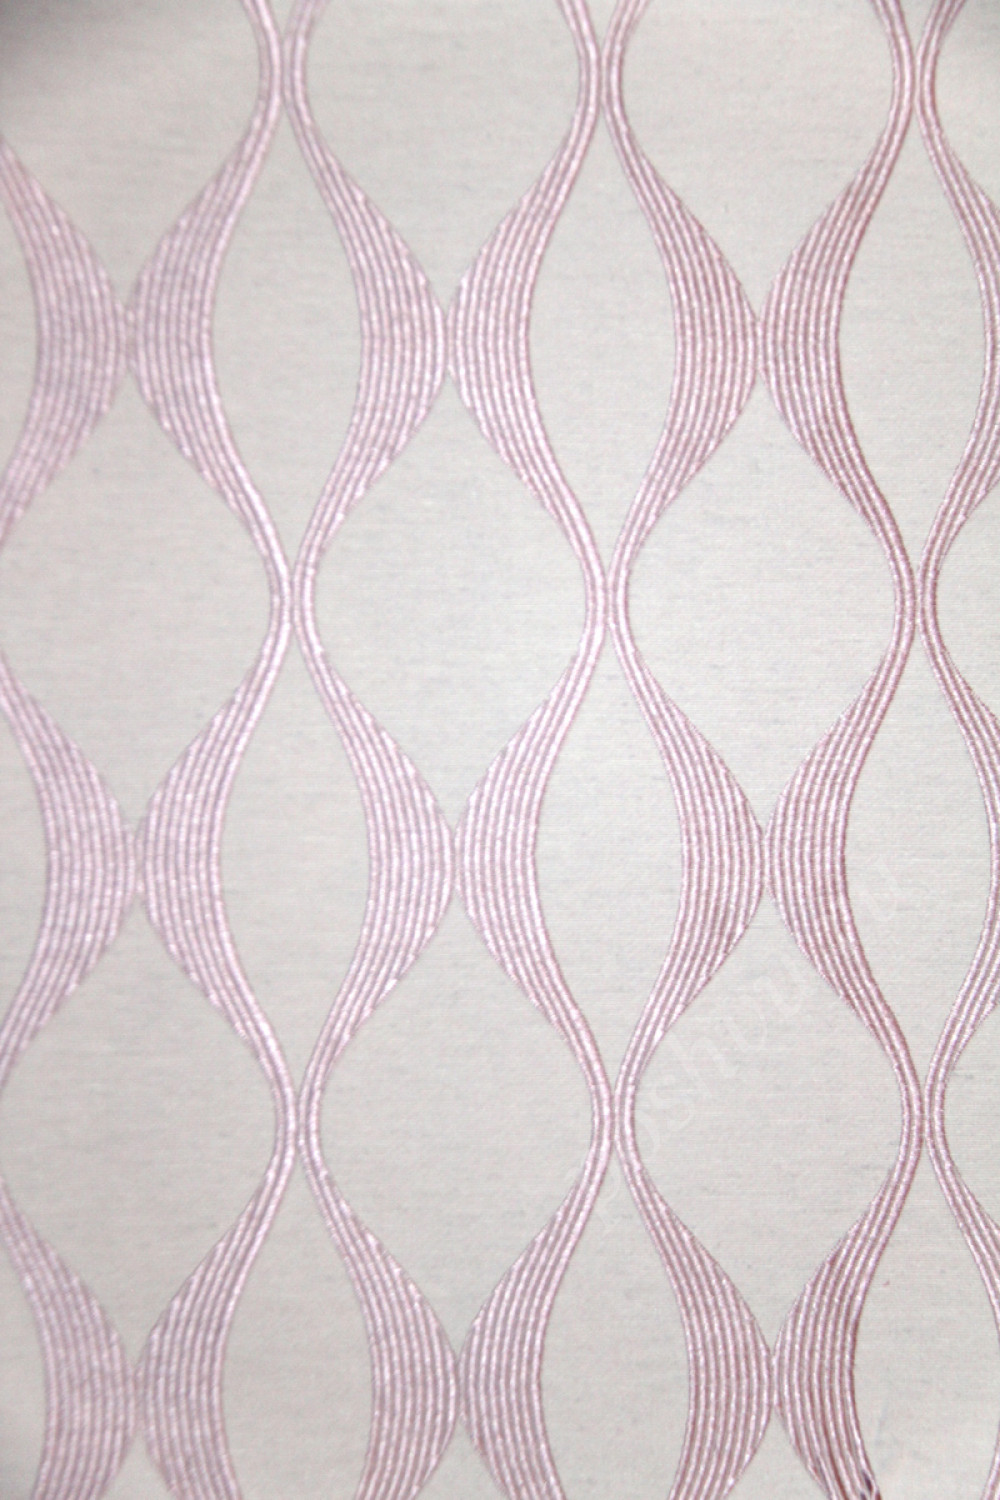 Ткань для штор SUNRUSE UDAIPUR розовый геометрический узор на белом фоне (раппорт 9х16см)